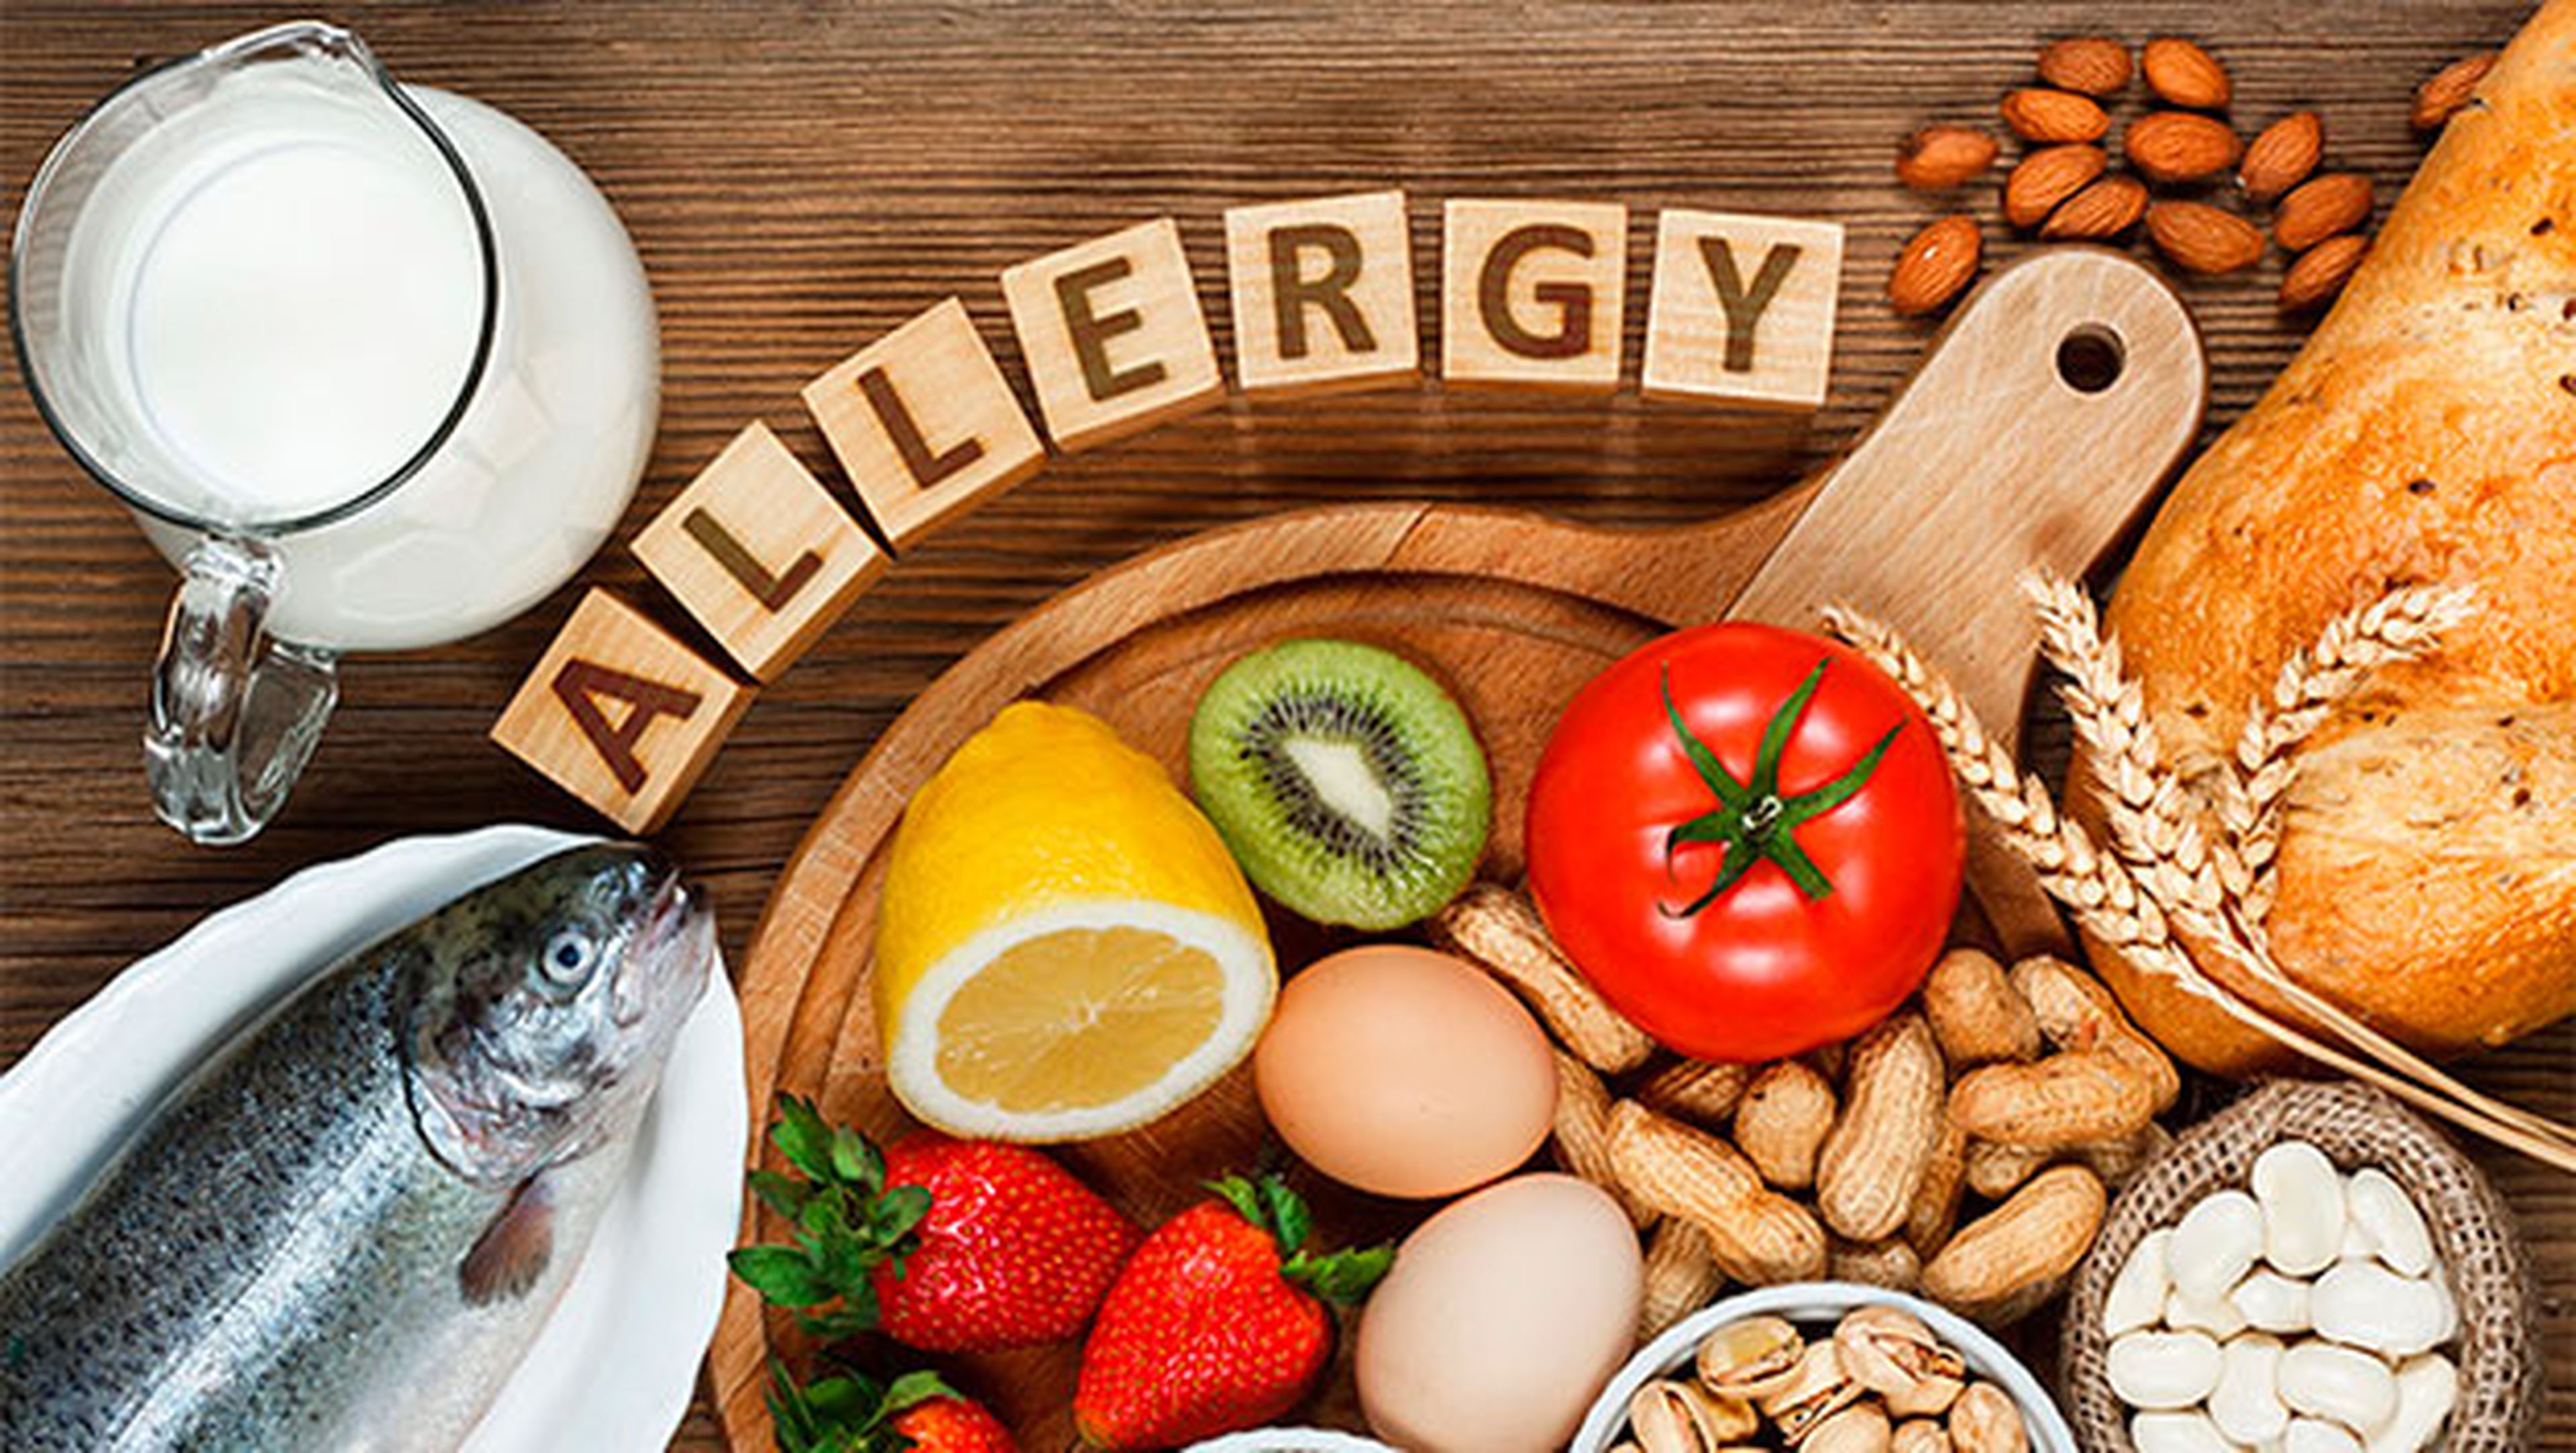 prevenir alergia alimentaria